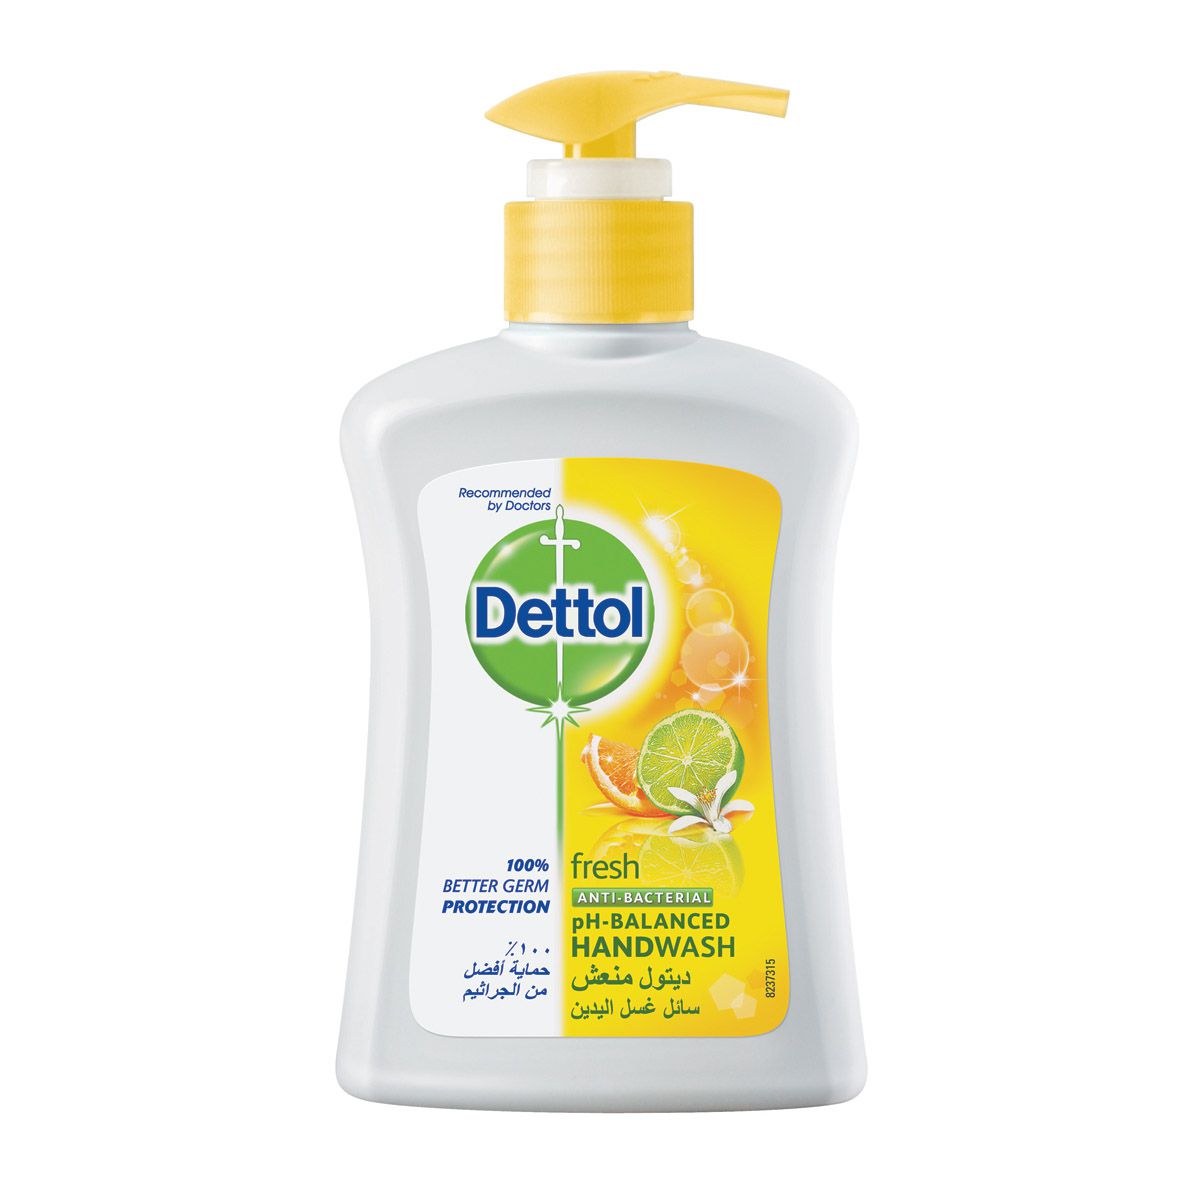 Dettol Antibacterial Fresh Liquid Hand Wash | Dettol